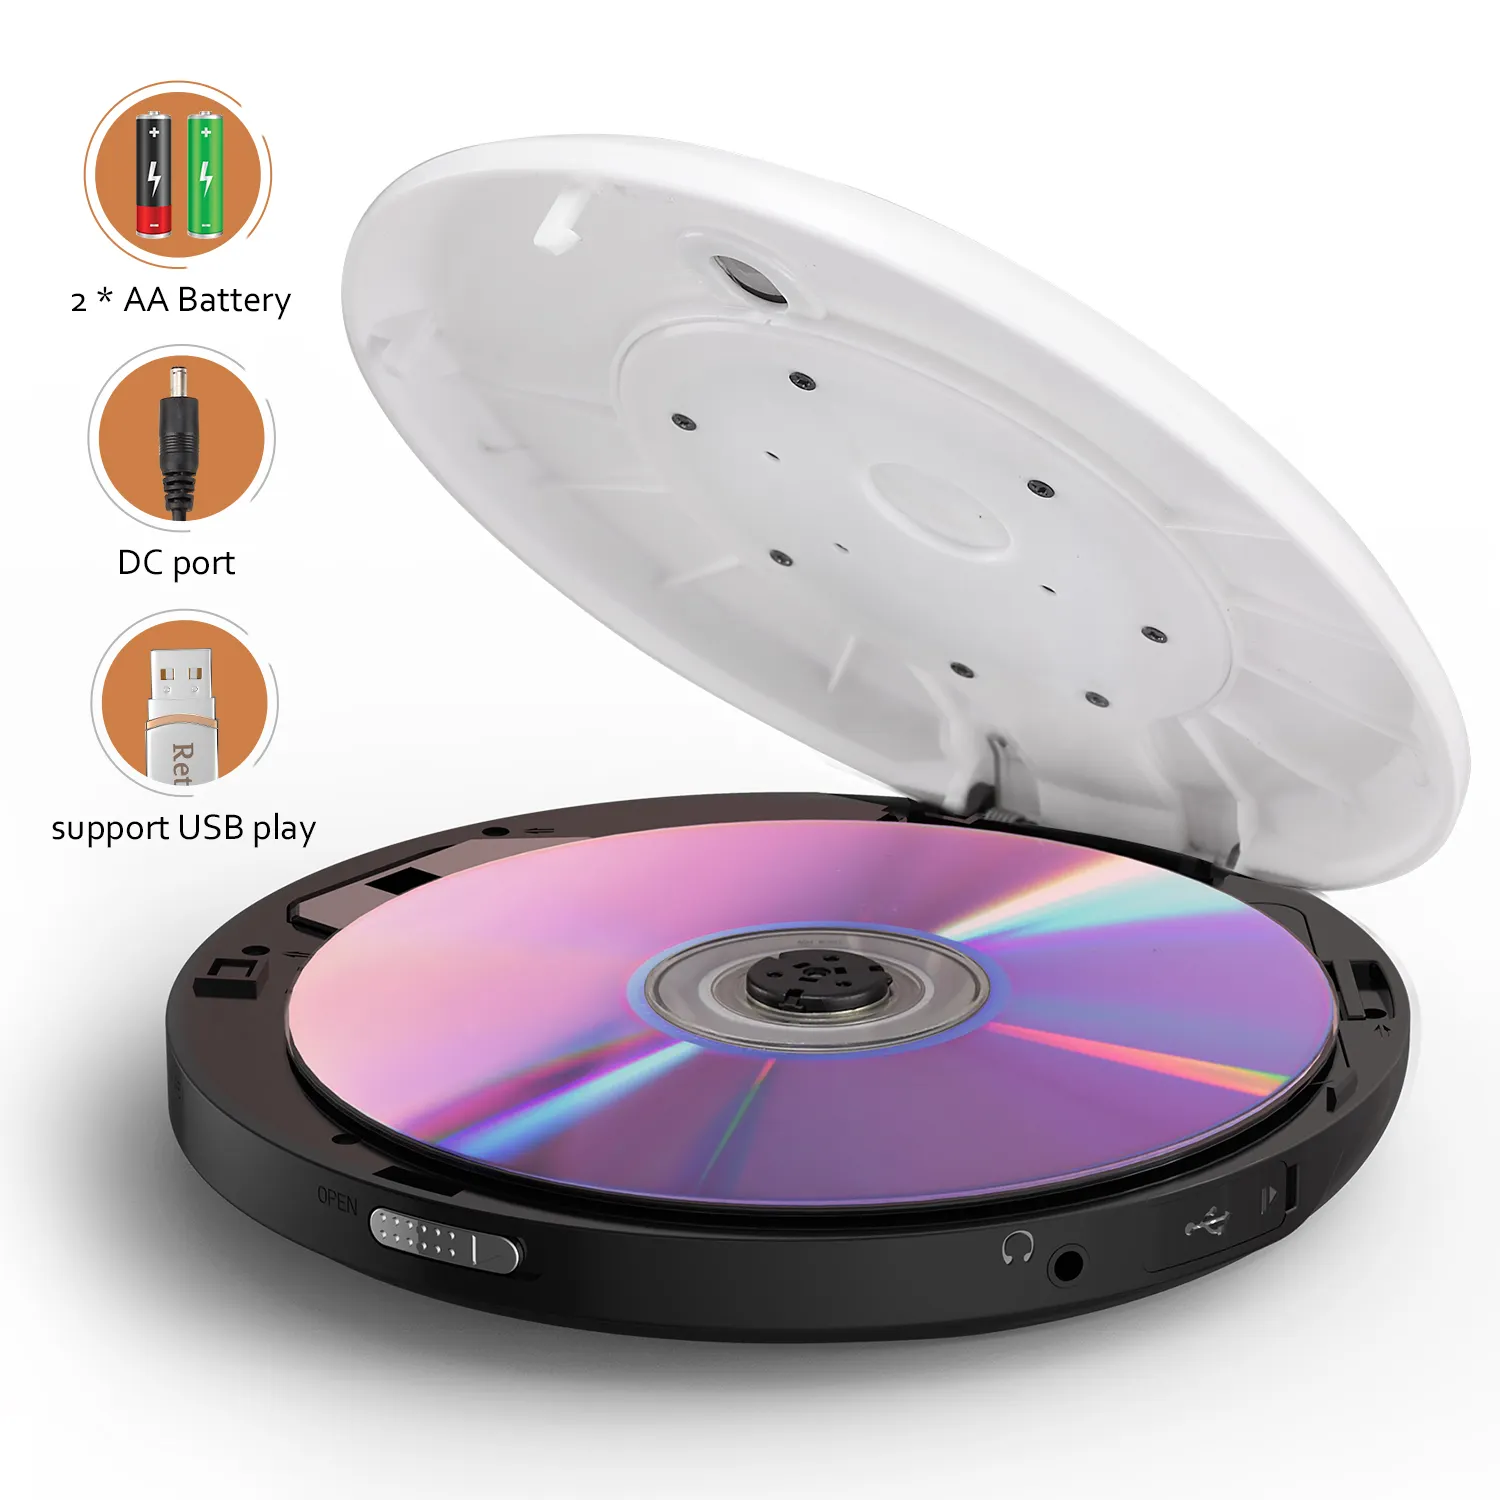 Taşınabilir kişisel CD çalar Discman CD/MP3 müzik ses çalar ile FM/ DAB radyo